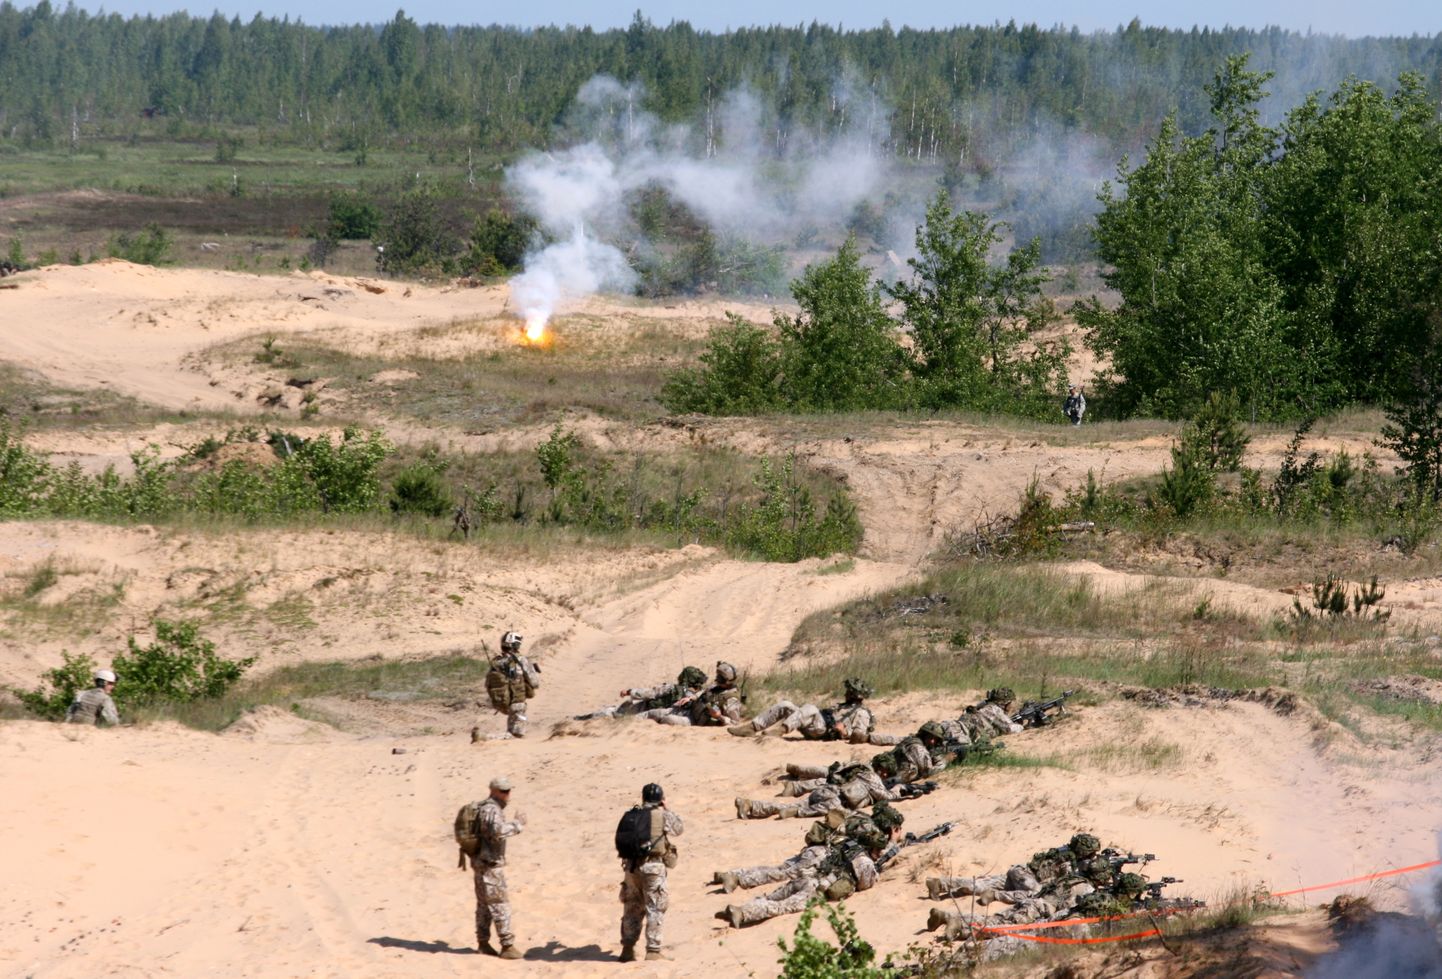 Ādažu poligonā norisinās starptautiskās mācības "Saber Strike 2015", kurās piedalās vairāk nekā 1000 karavīru no Latvijas, Lietuvas, Igaunijas, kā arī ASV, Lielbritānijas un Somijas. Ilustratīvs foto